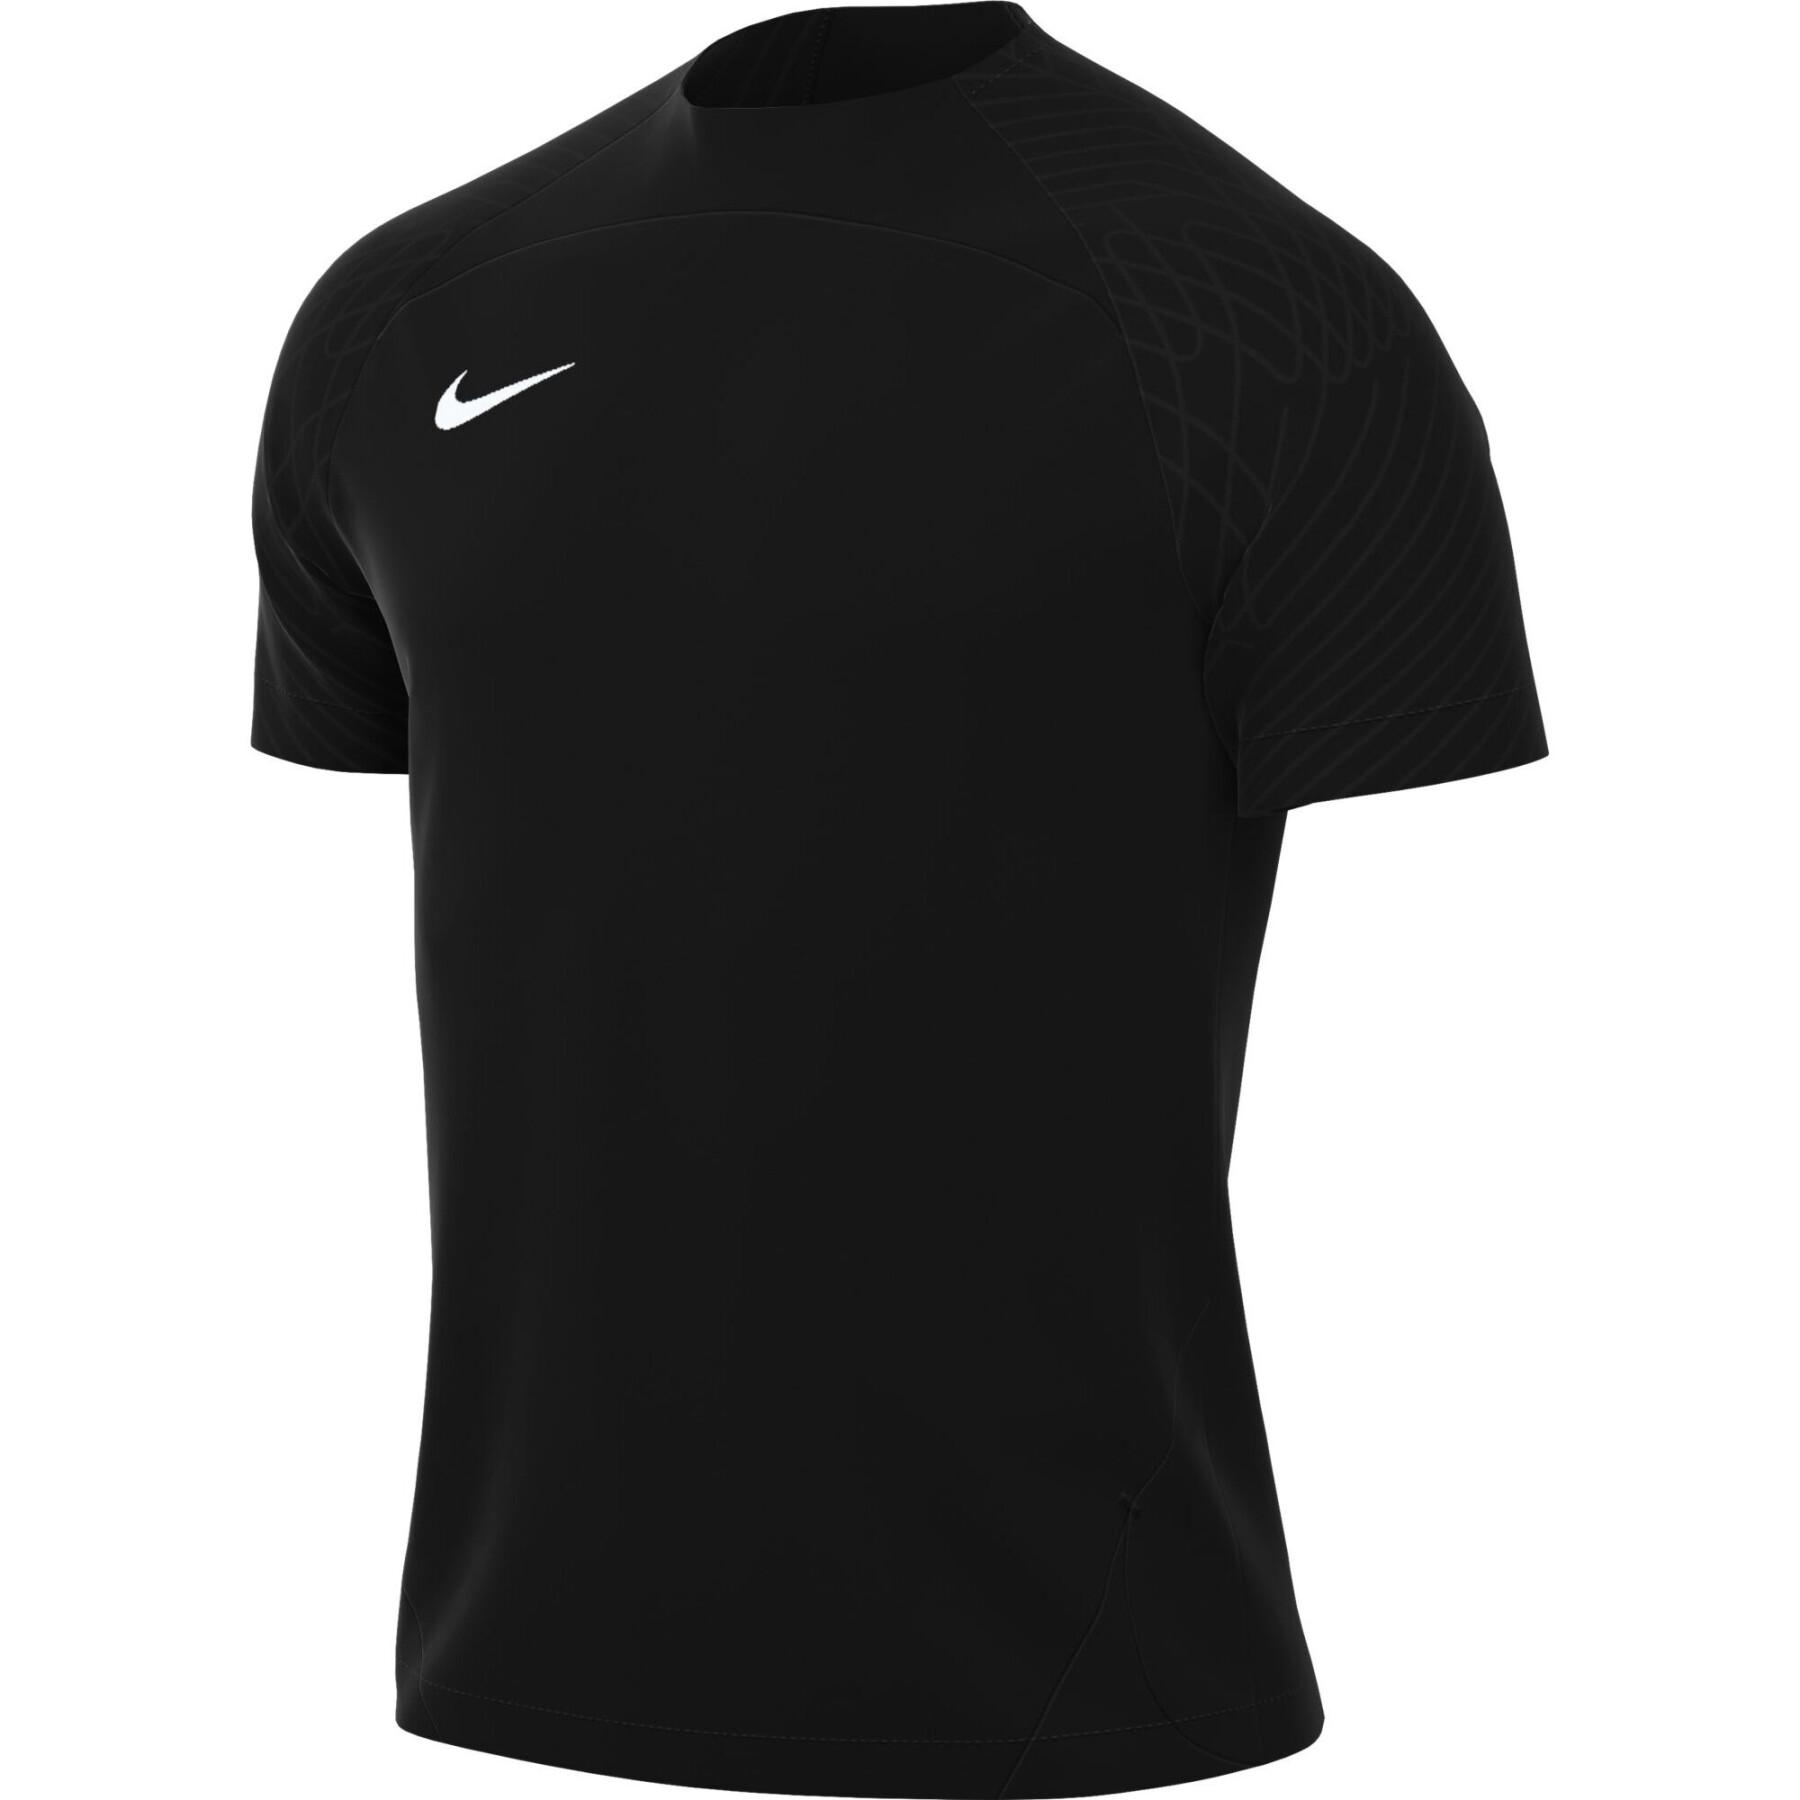 Camiseta Nike Dri-Fit Strike III